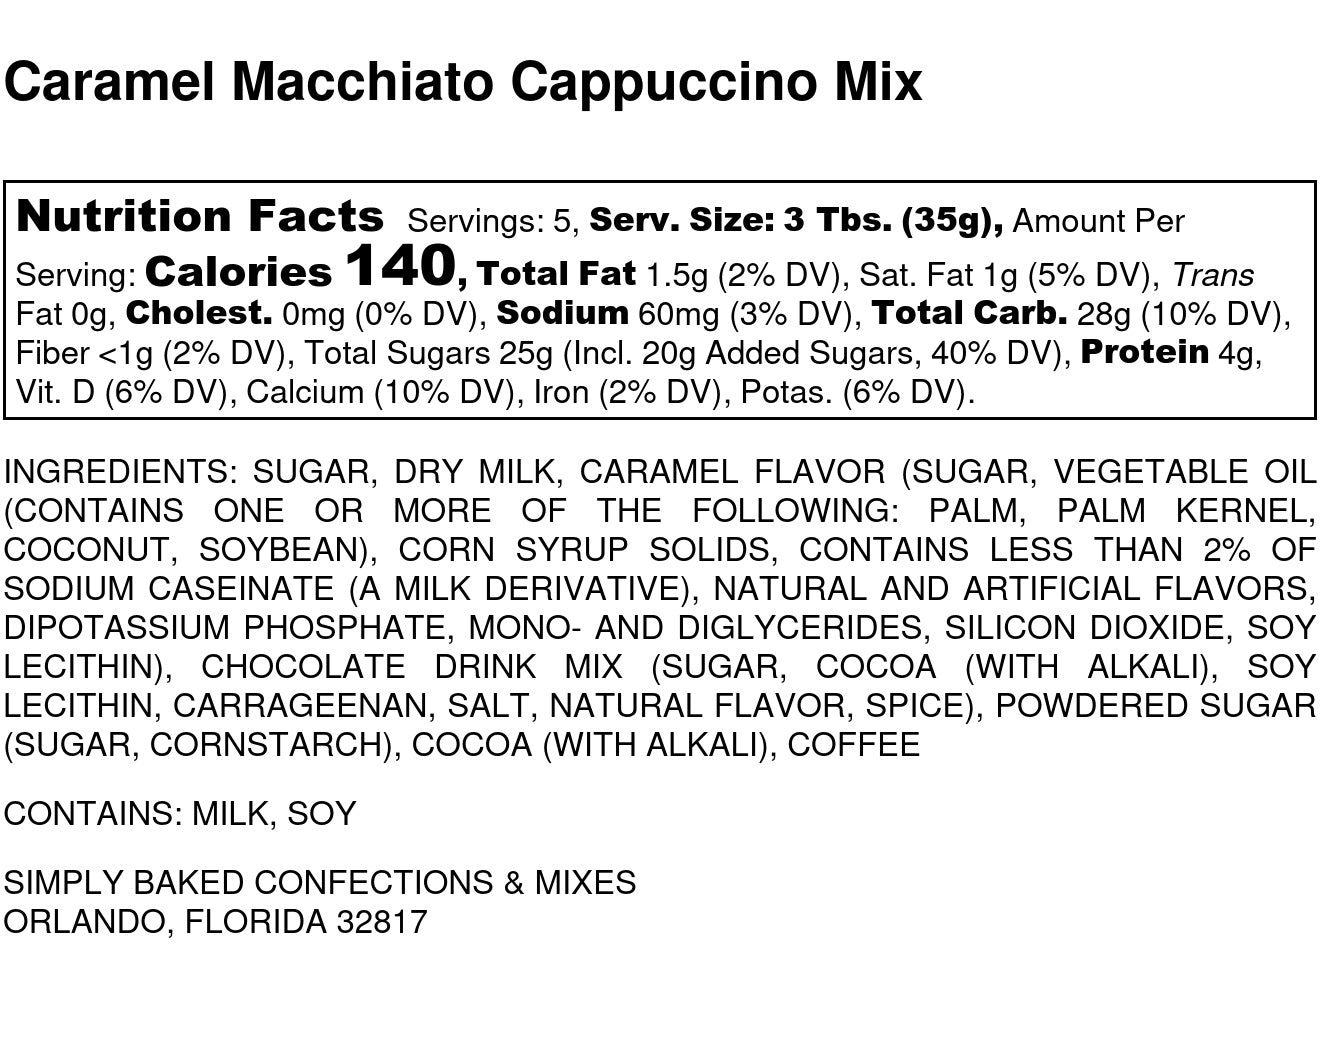 Caramel Macchiato Cappuccino Mix